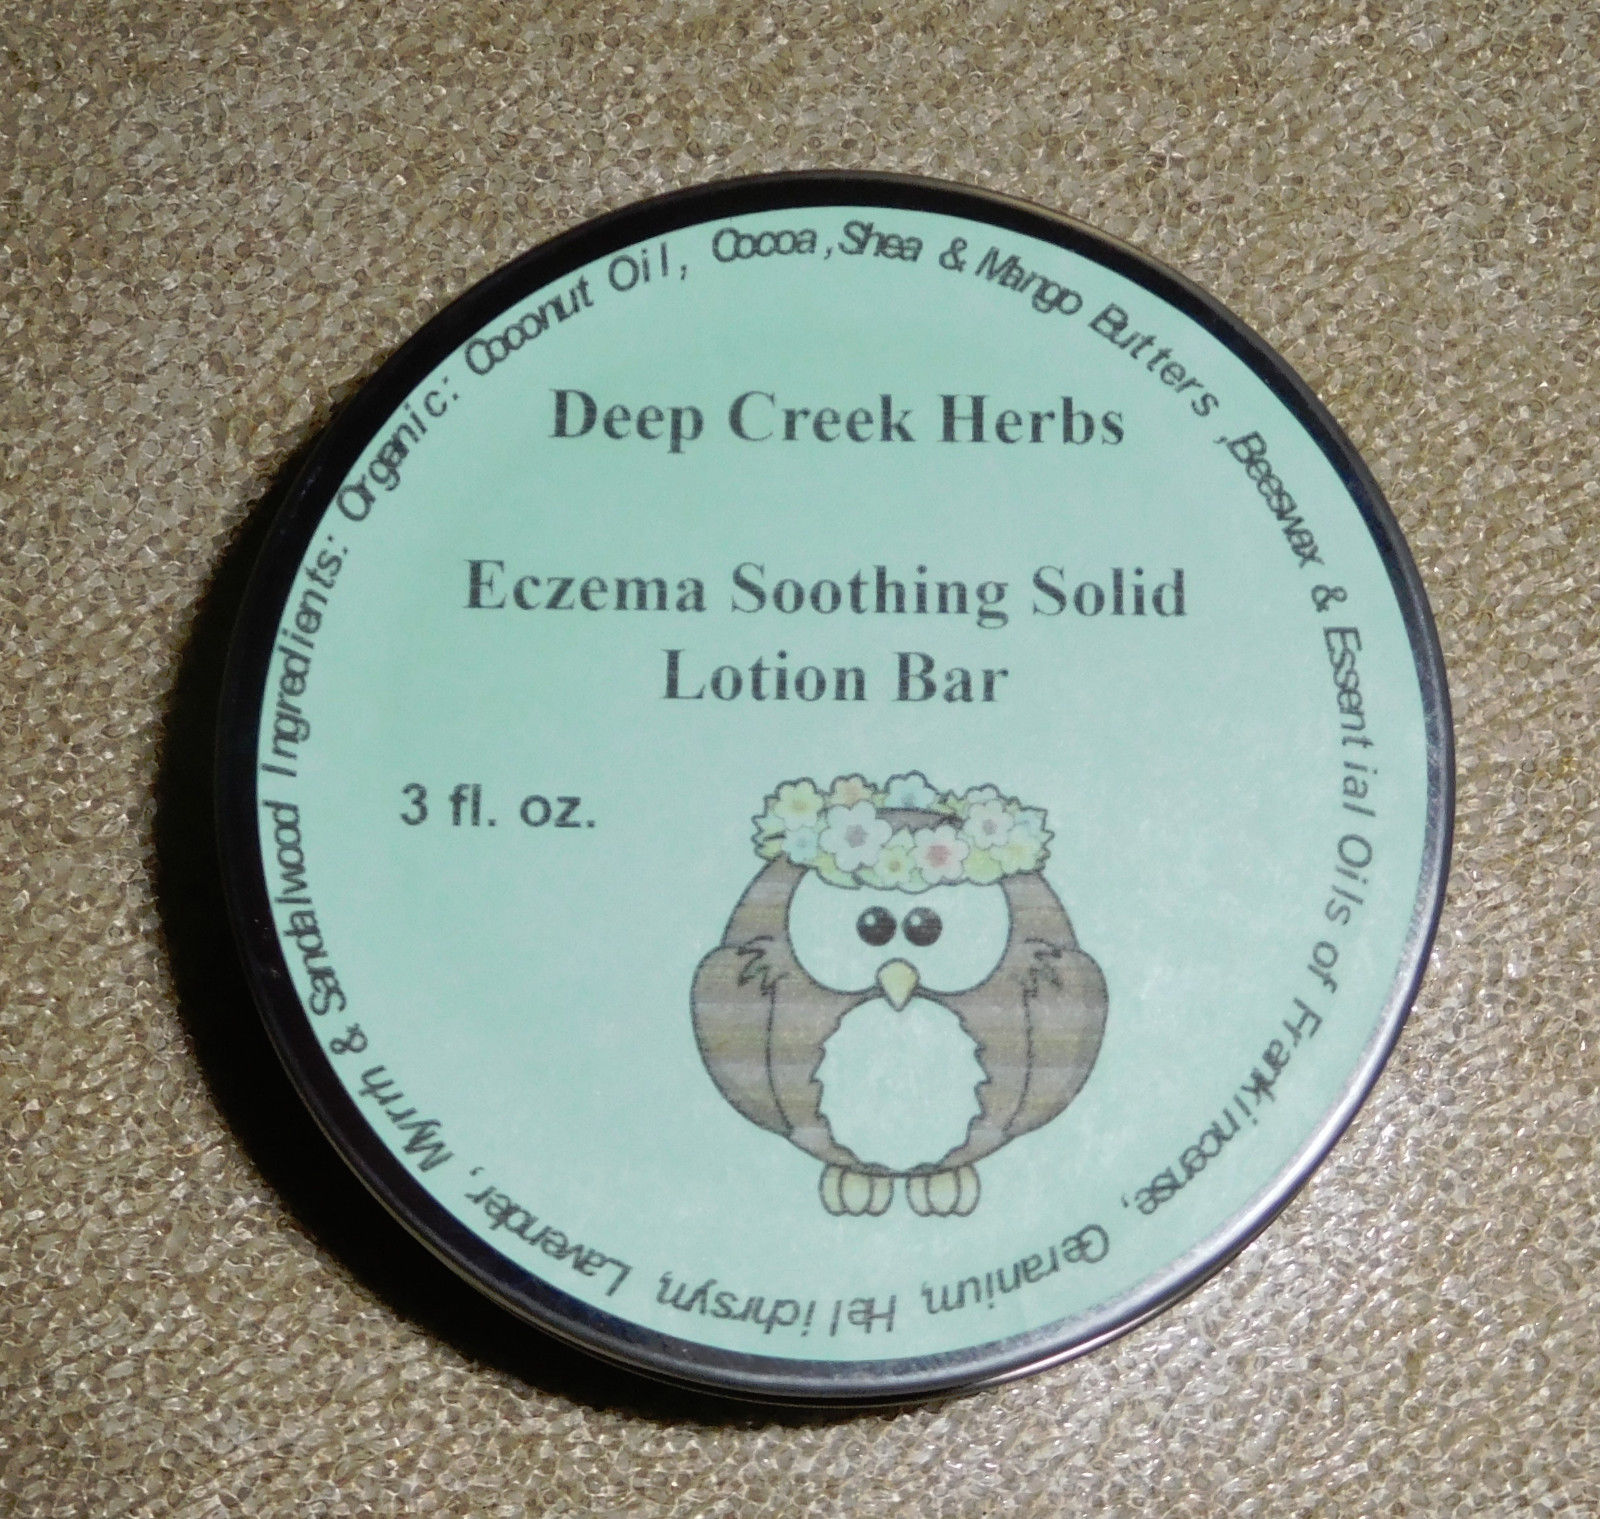 Deep Creek Herbs Eczema Soothing Solid Lotion Bar - 3 fl. oz. - New! - $18.69